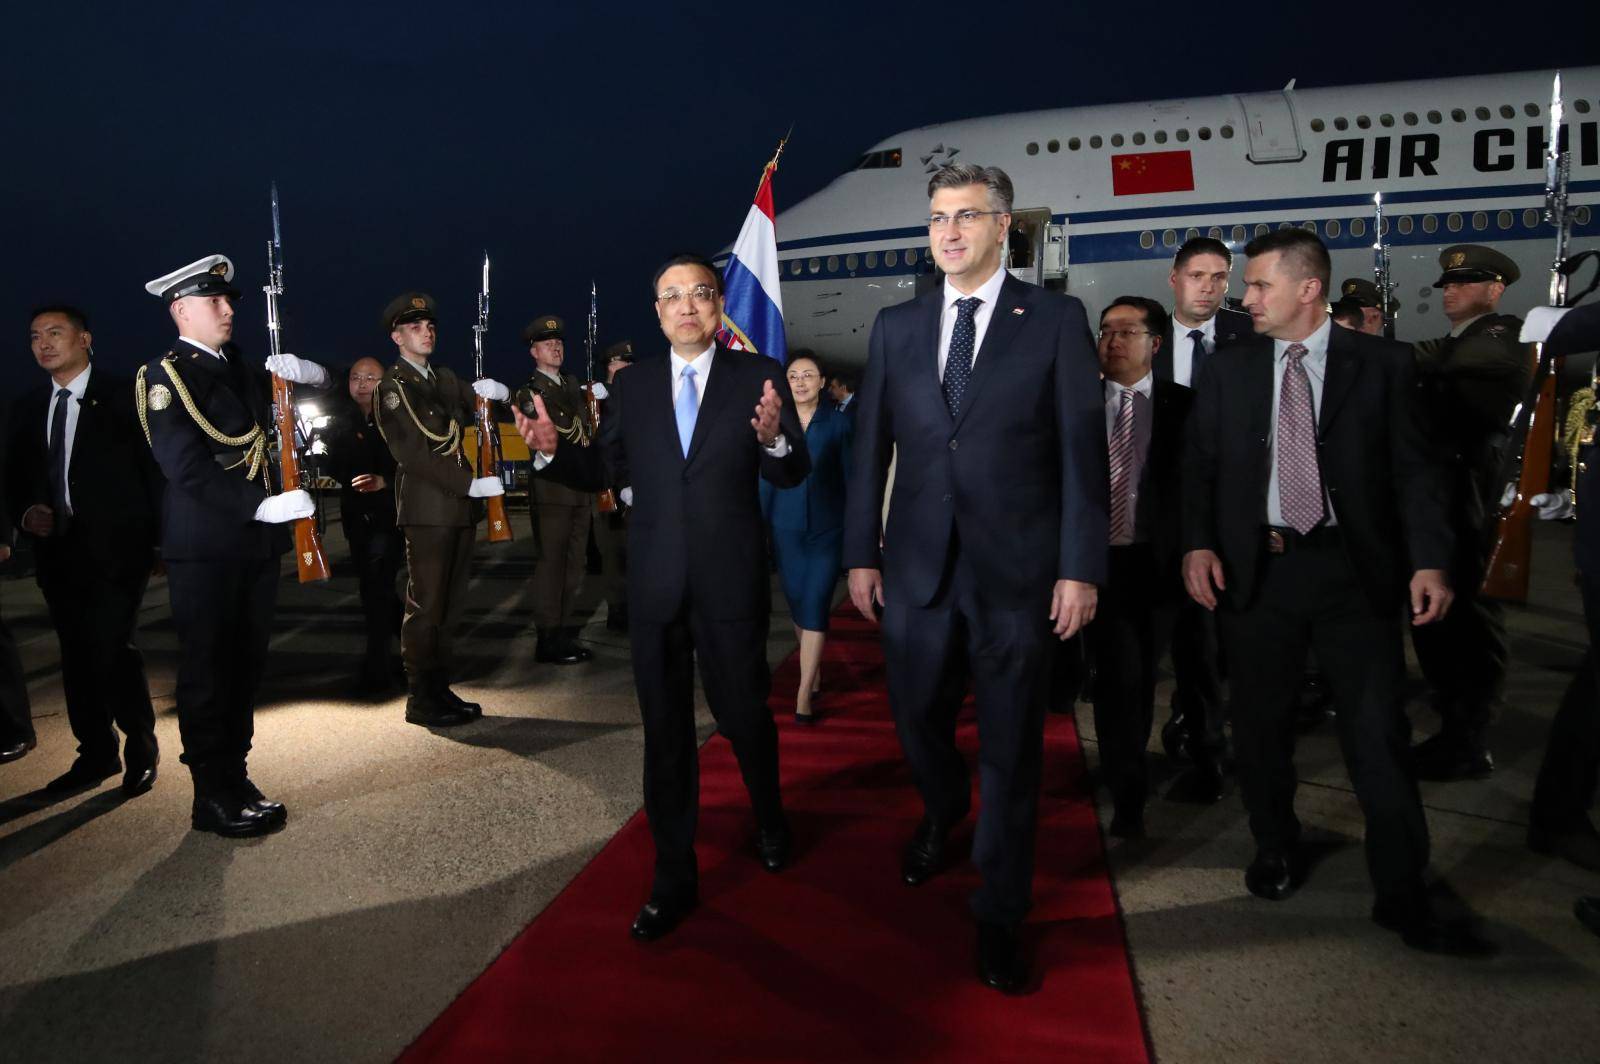 Kineski premijer je stigao u Hrvatsku: 'Ovo je velika šansa'